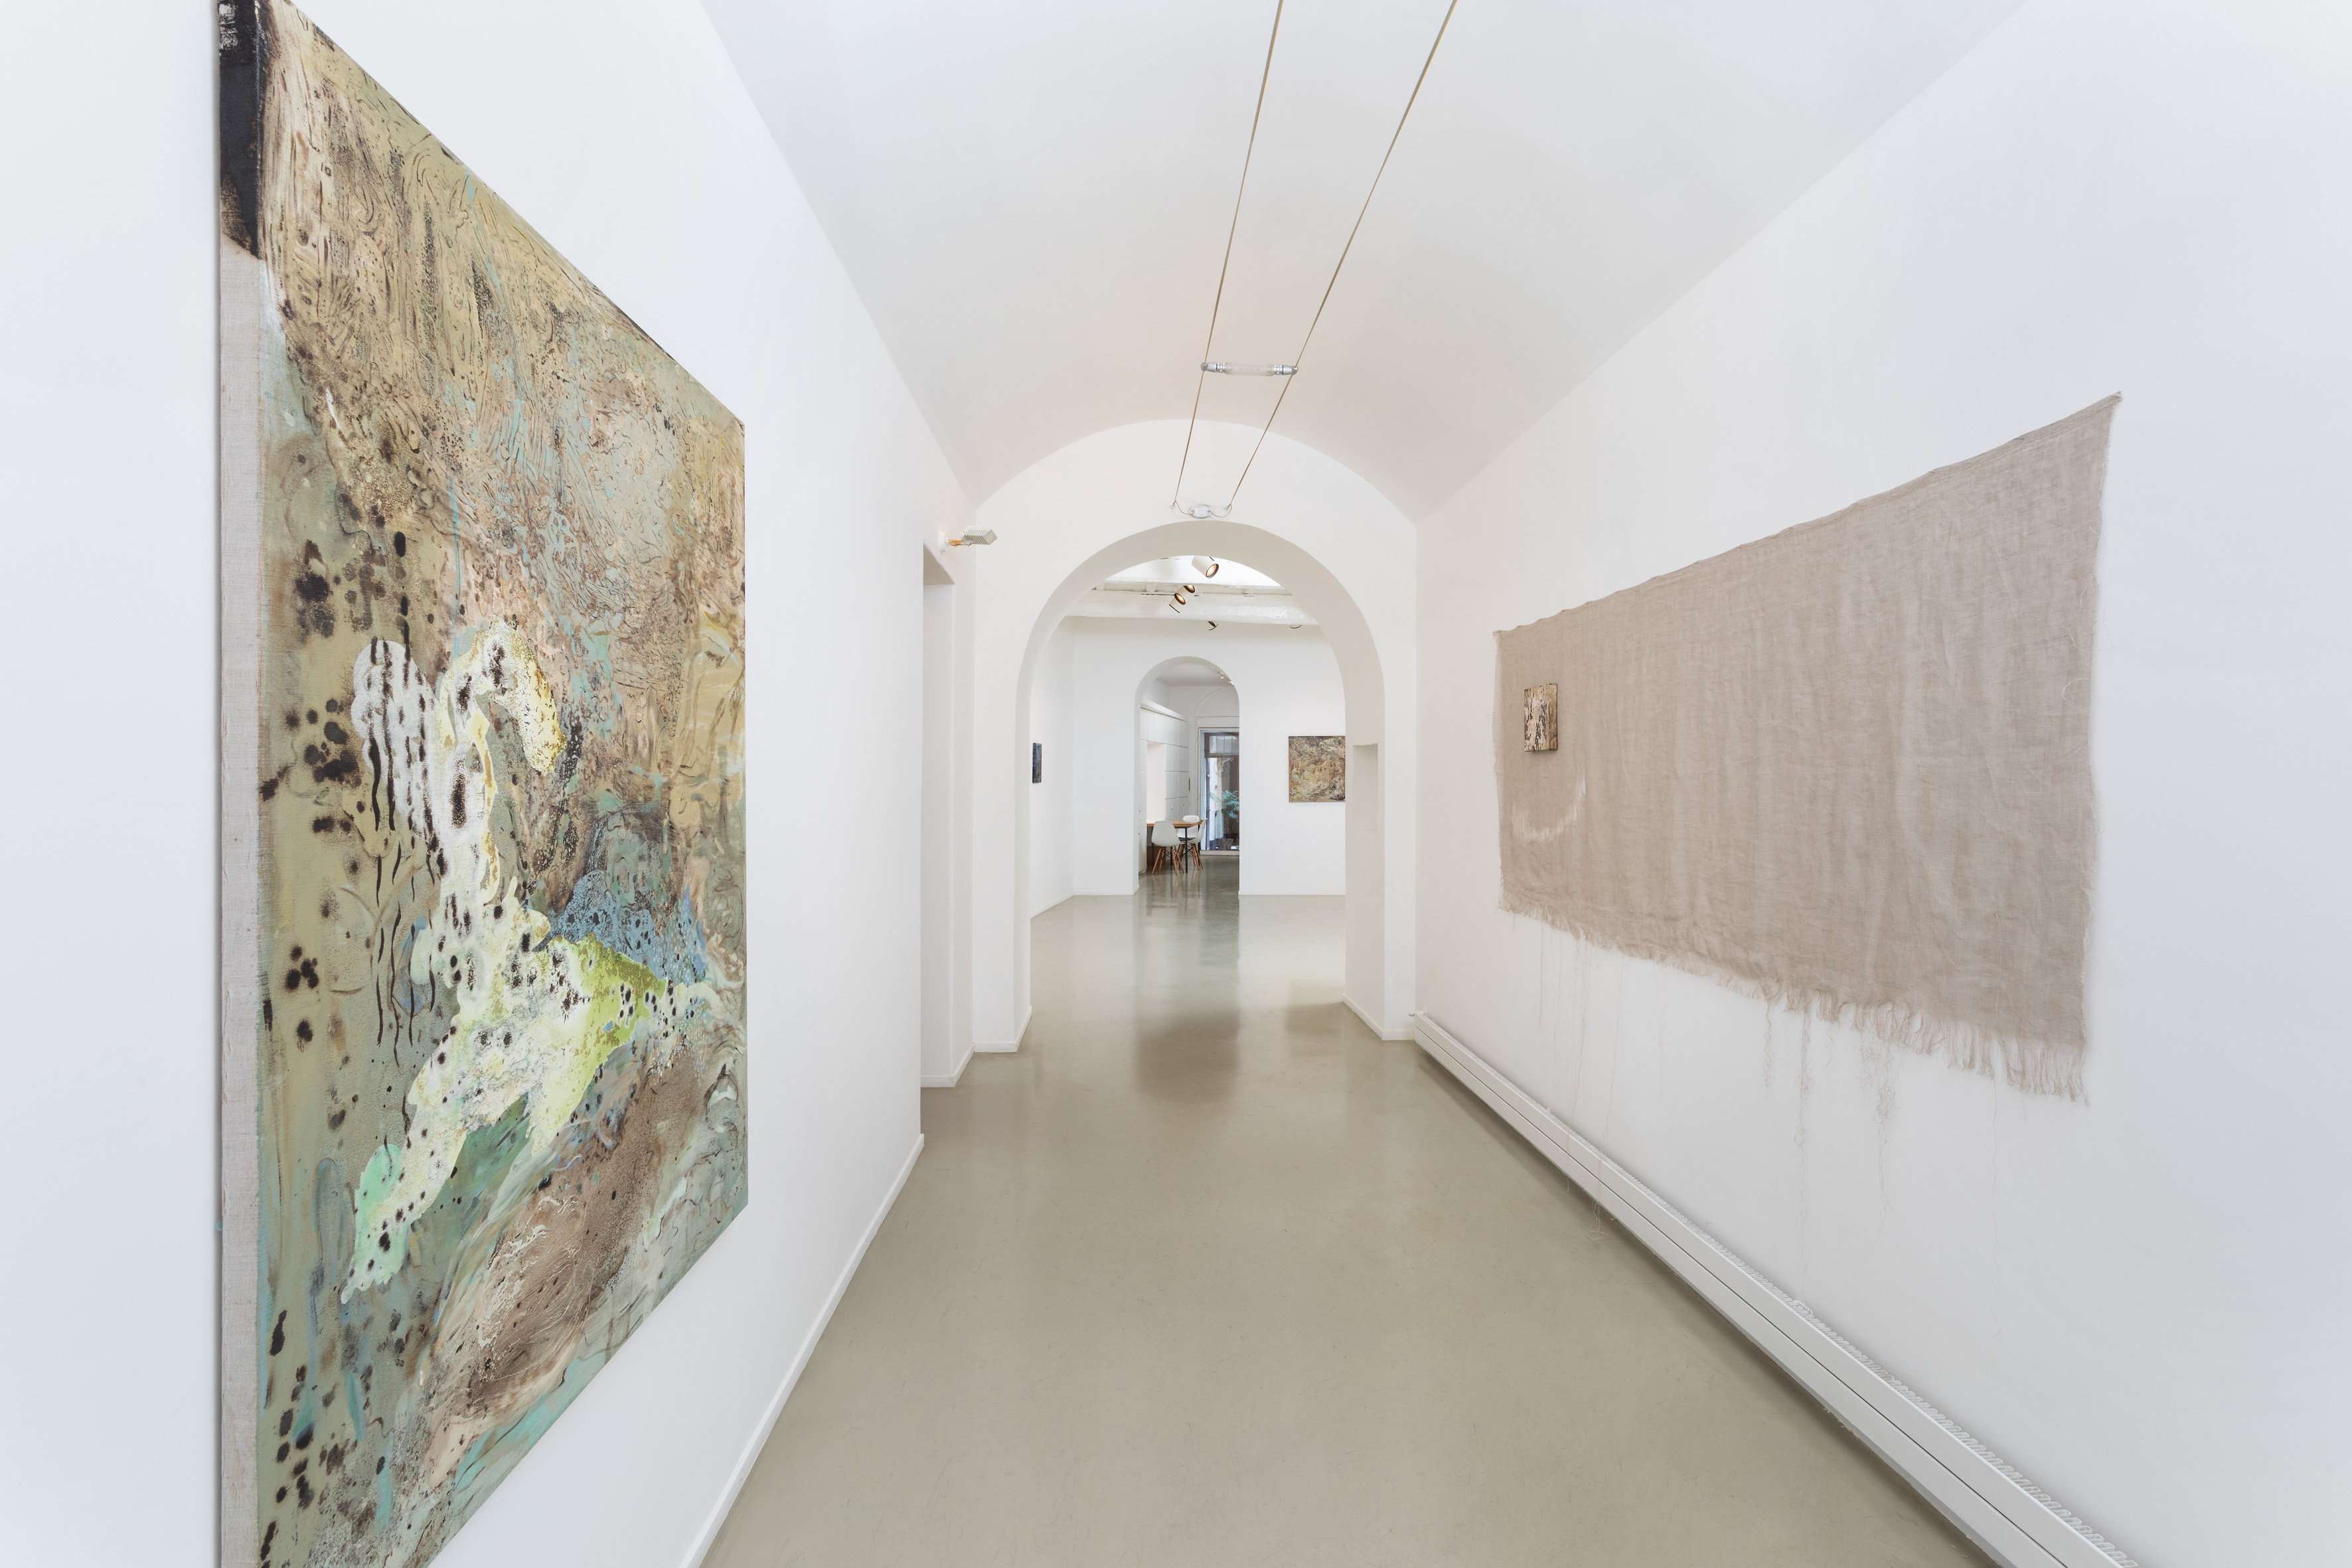 Sabrina Casadei, Tessere l'invisibile, exhibition view, Francesca Antonini Arte Contemporanea, 2021, fotografia di Daniele Molajoli